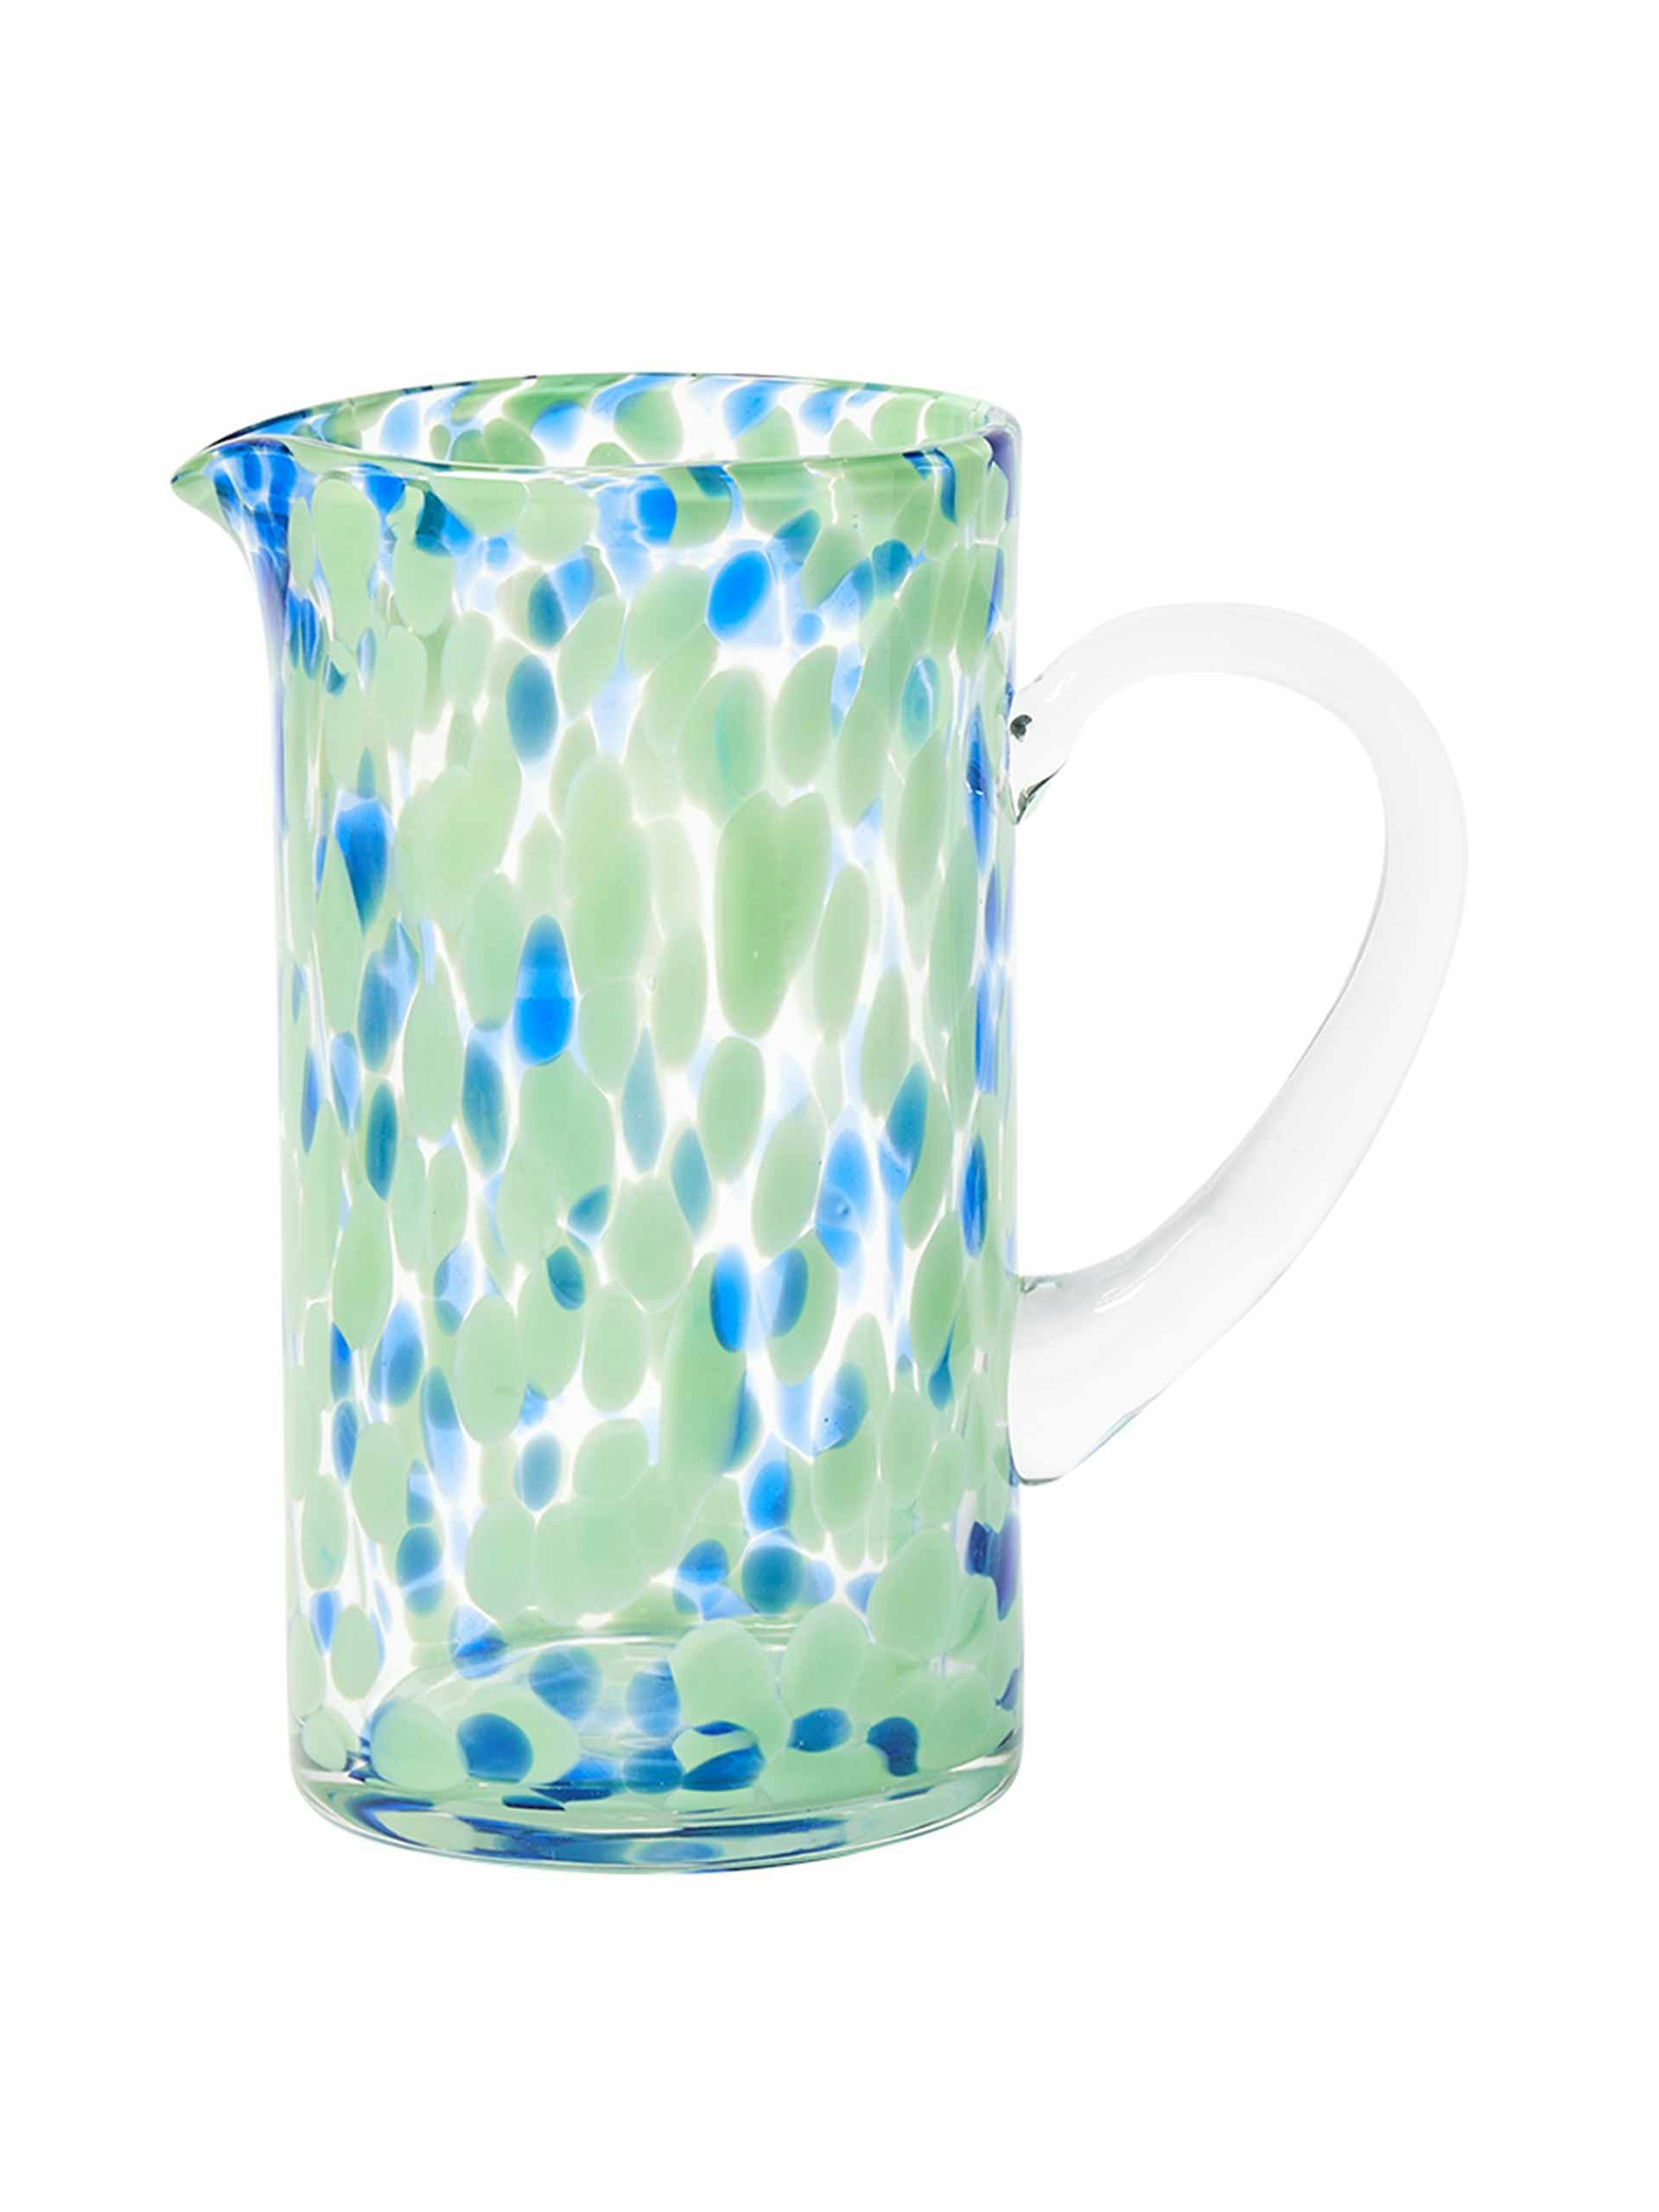 Bexton spot green glass water jug